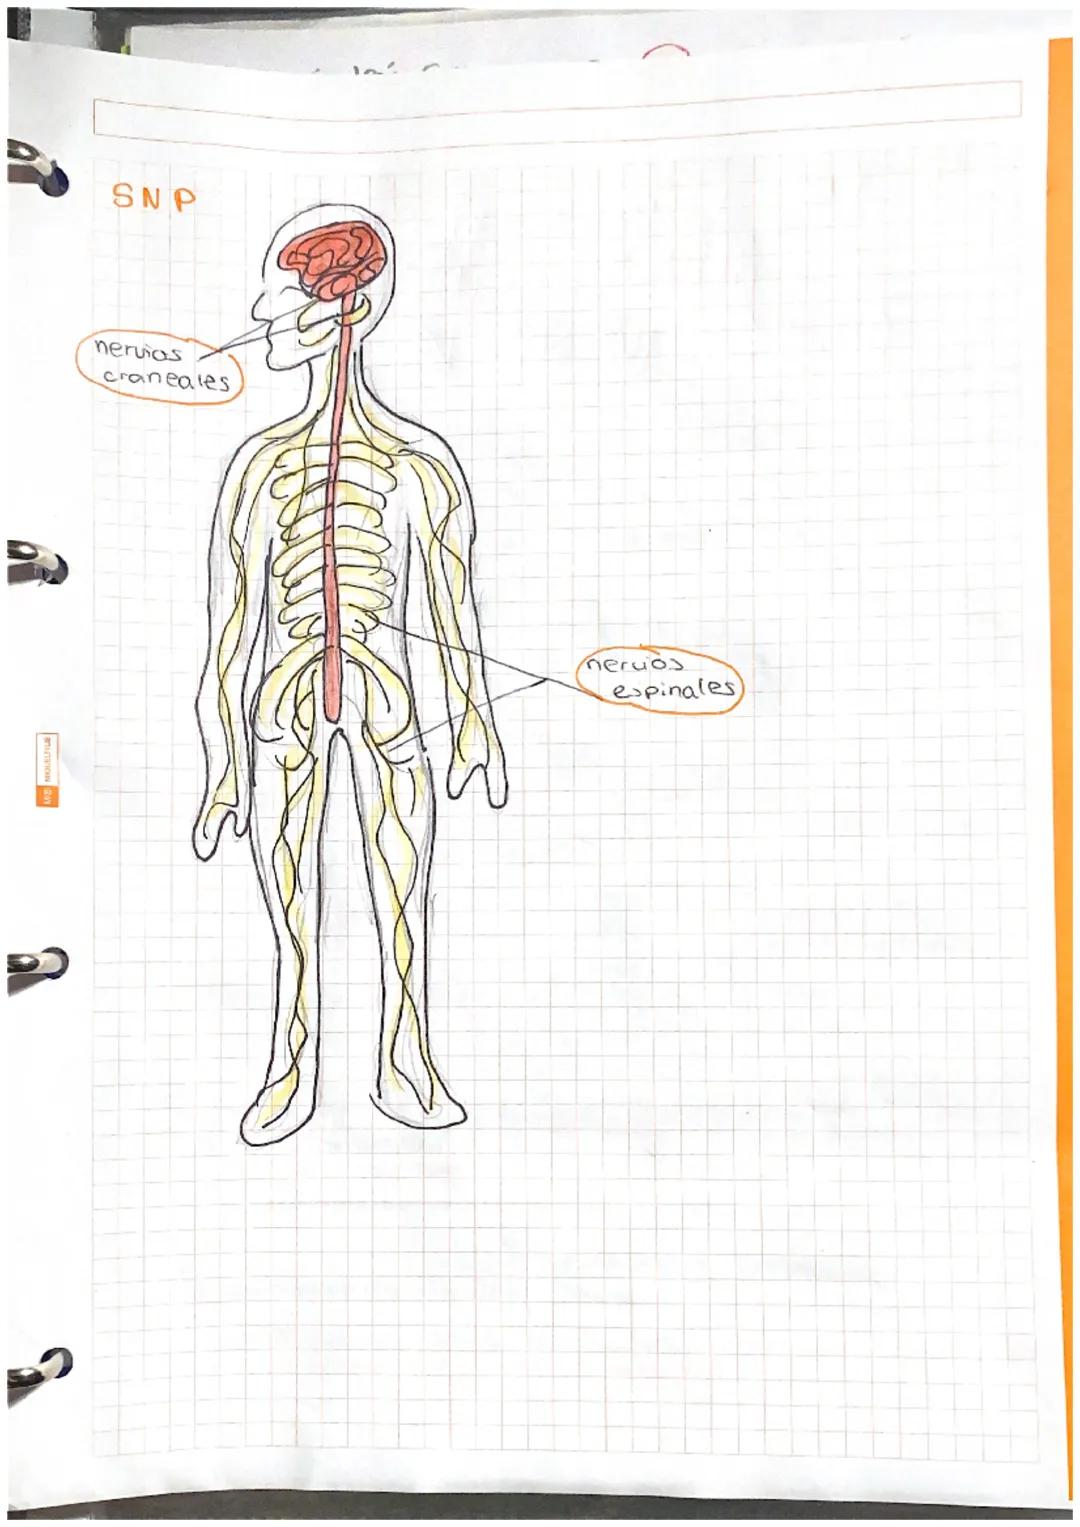 at Sistamm
Nerviese,
Sistema
Central
(SNC)
encefalo
Médula
espinal:
actos reflejos
Cerebro informacion de cos
receptores actividades volunta